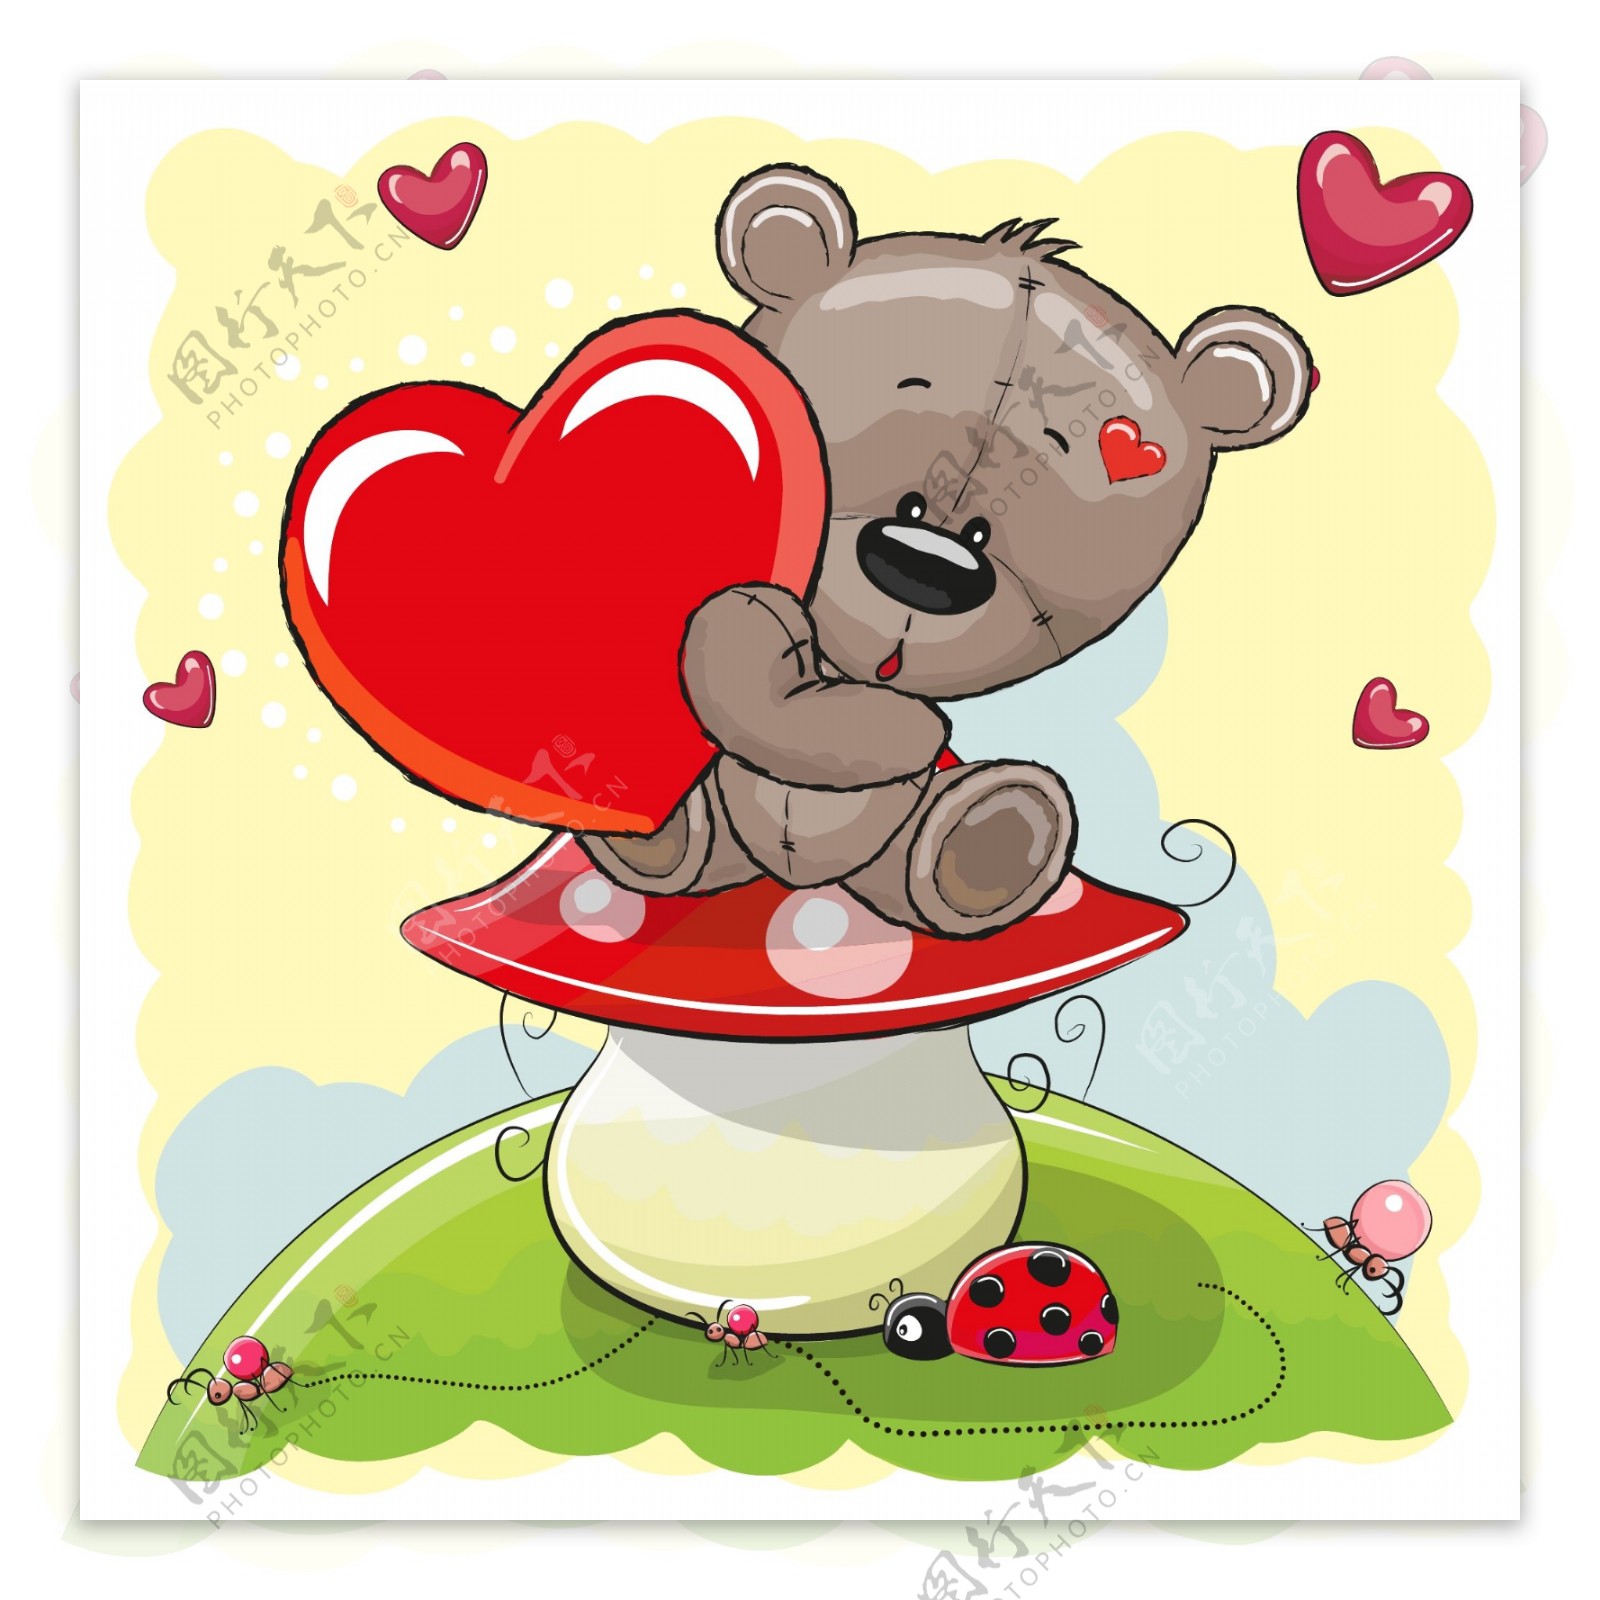 卡通坐在蘑菇上的泰迪熊矢量图